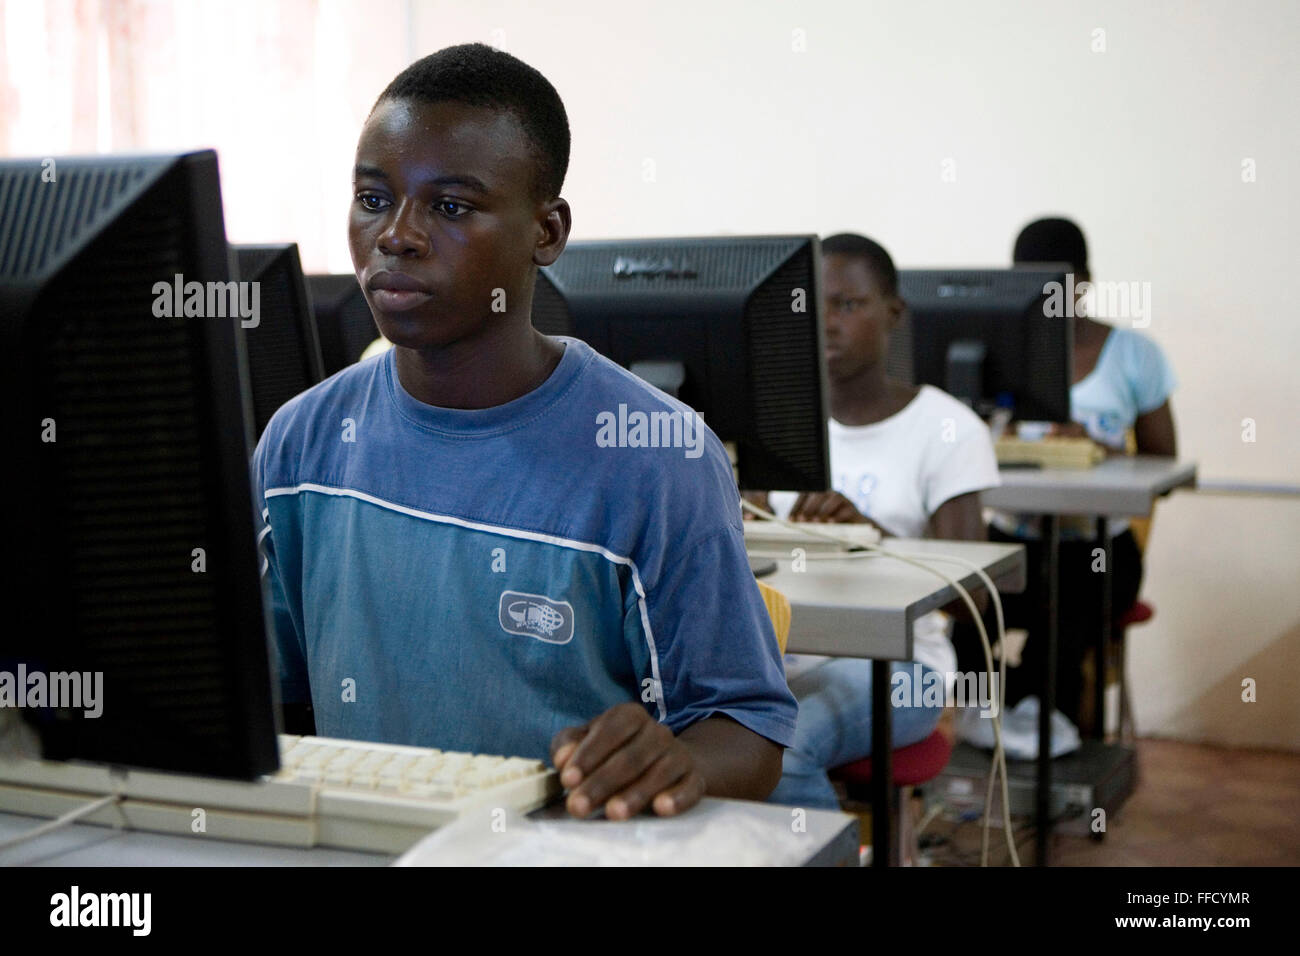 In Ghana settentrionale i giovani imparano nuove competenze sui computer attraverso i diritti del bambino organizzazione Afrikids. Bambini vulnerabili è in grado di apprendere nuove abilità e del commercio, che consentirà di migliorare la qualità della loro vita e aiutare tutta la comunità indigena. Foto Stock